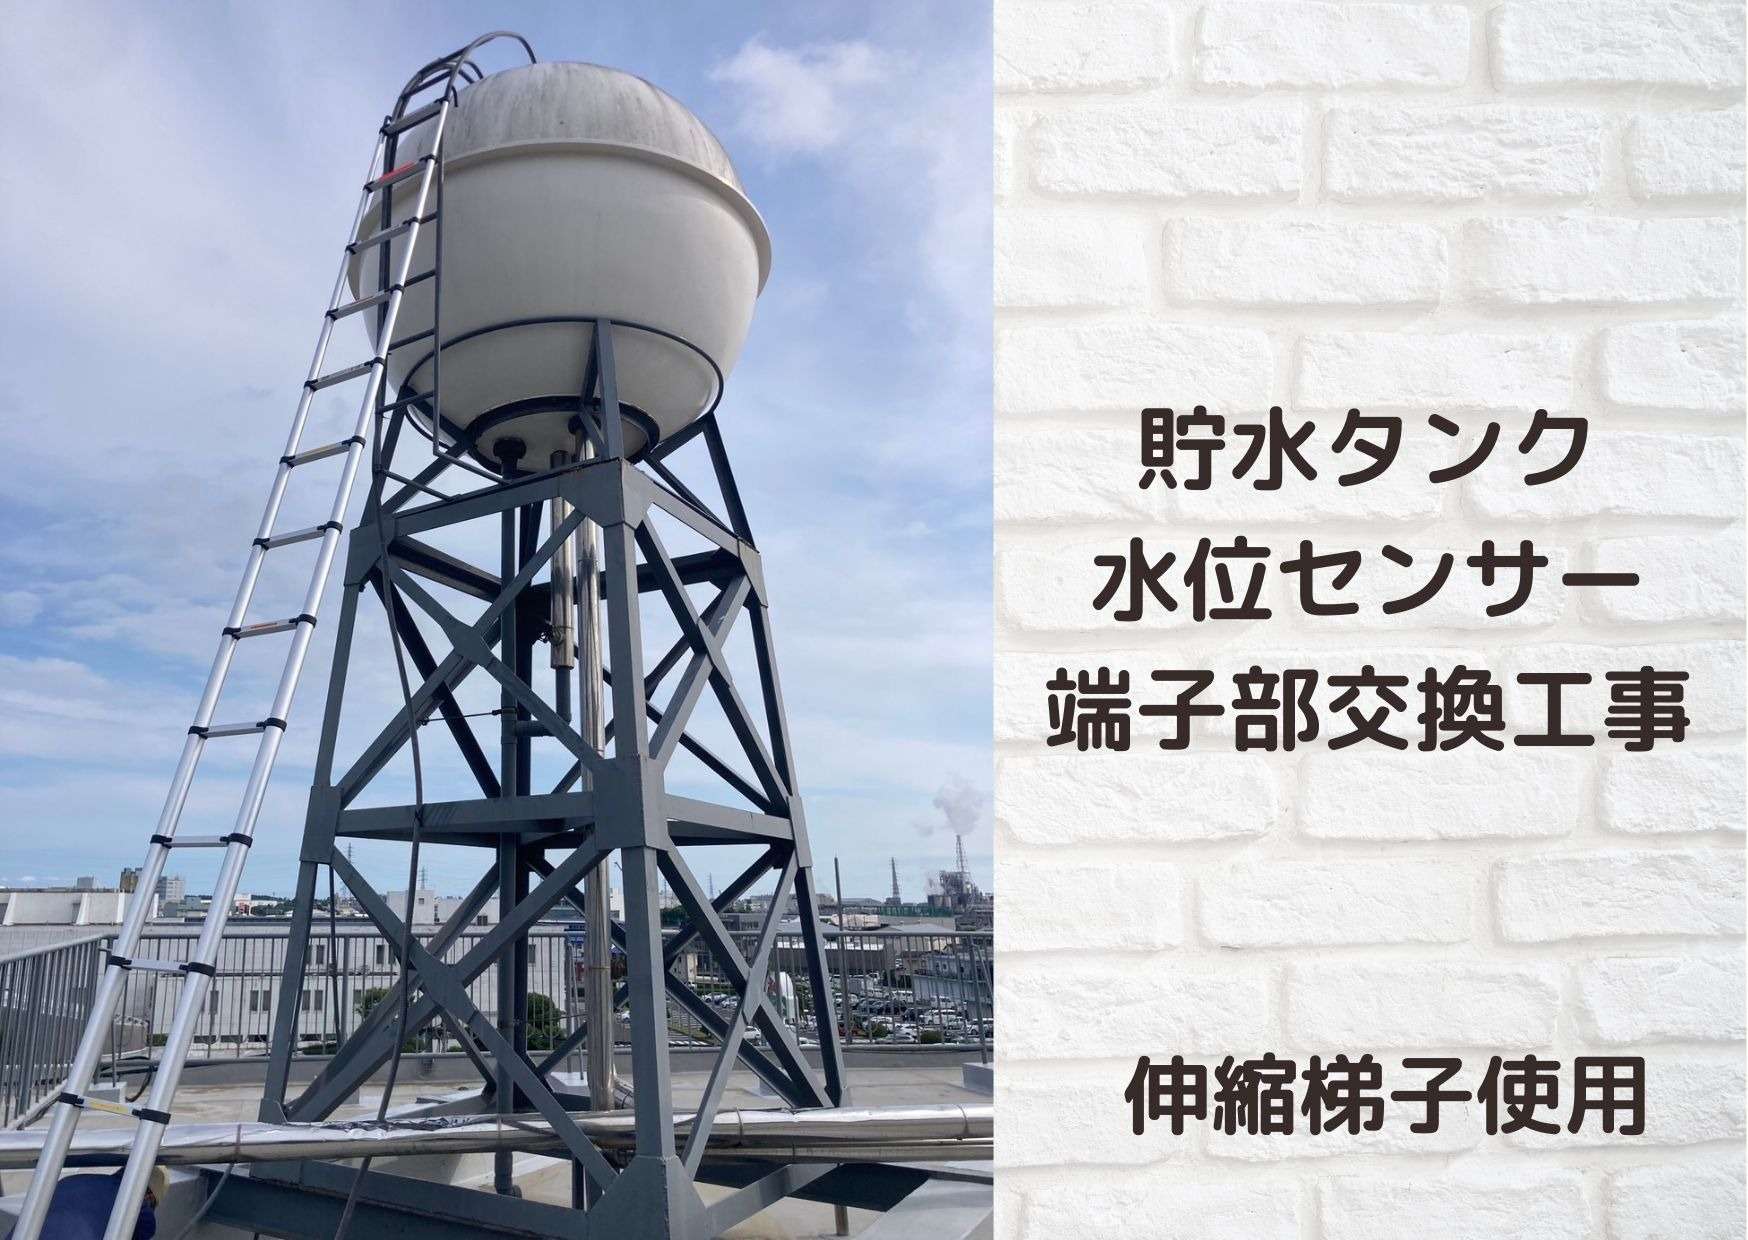 富士市マンション　貯水タンクの水位センサー端子部交換